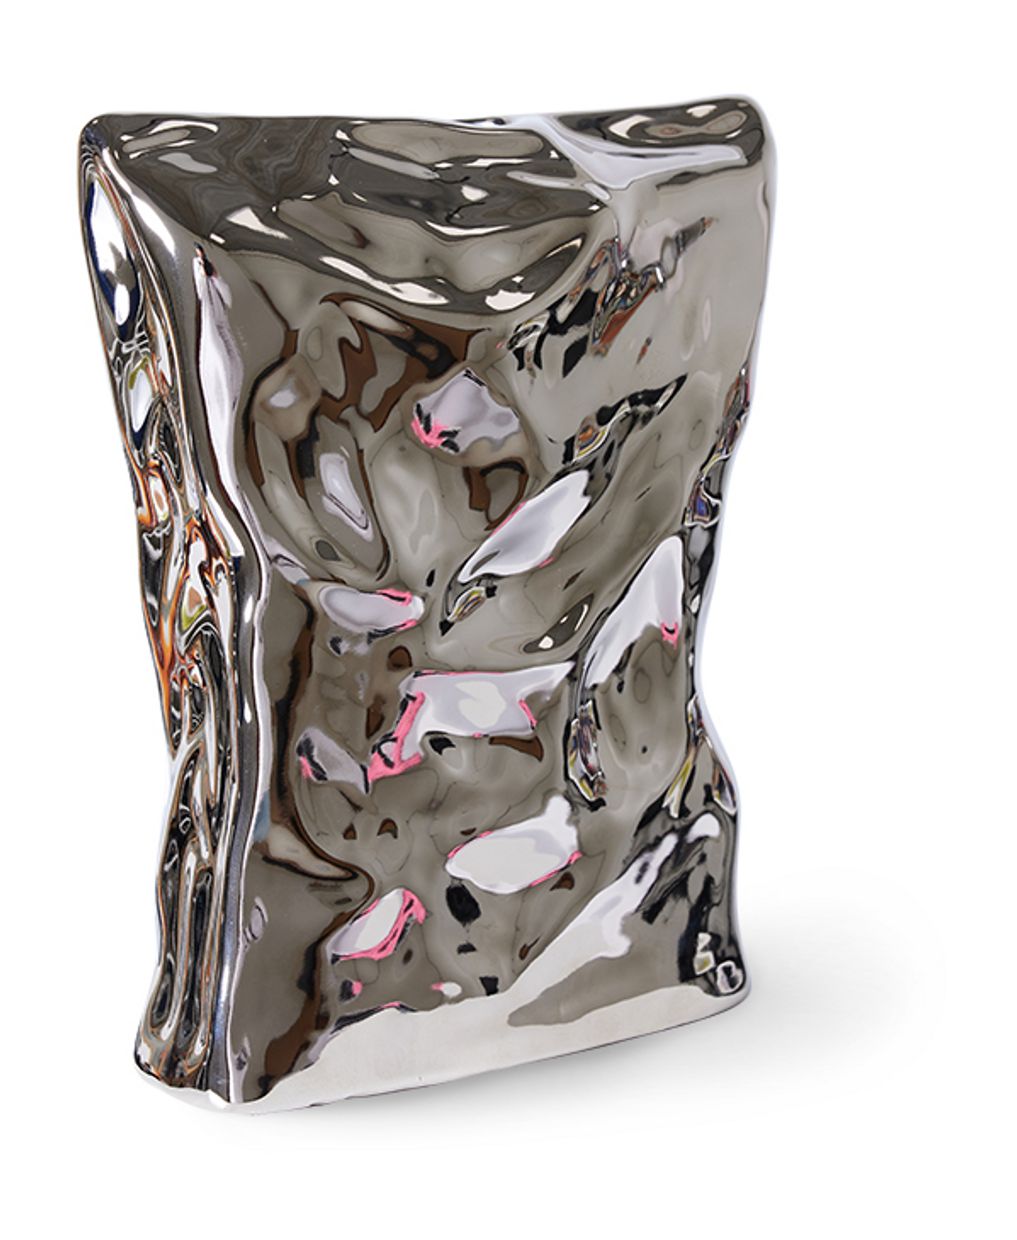 HK Objects: Bag of crisps vase